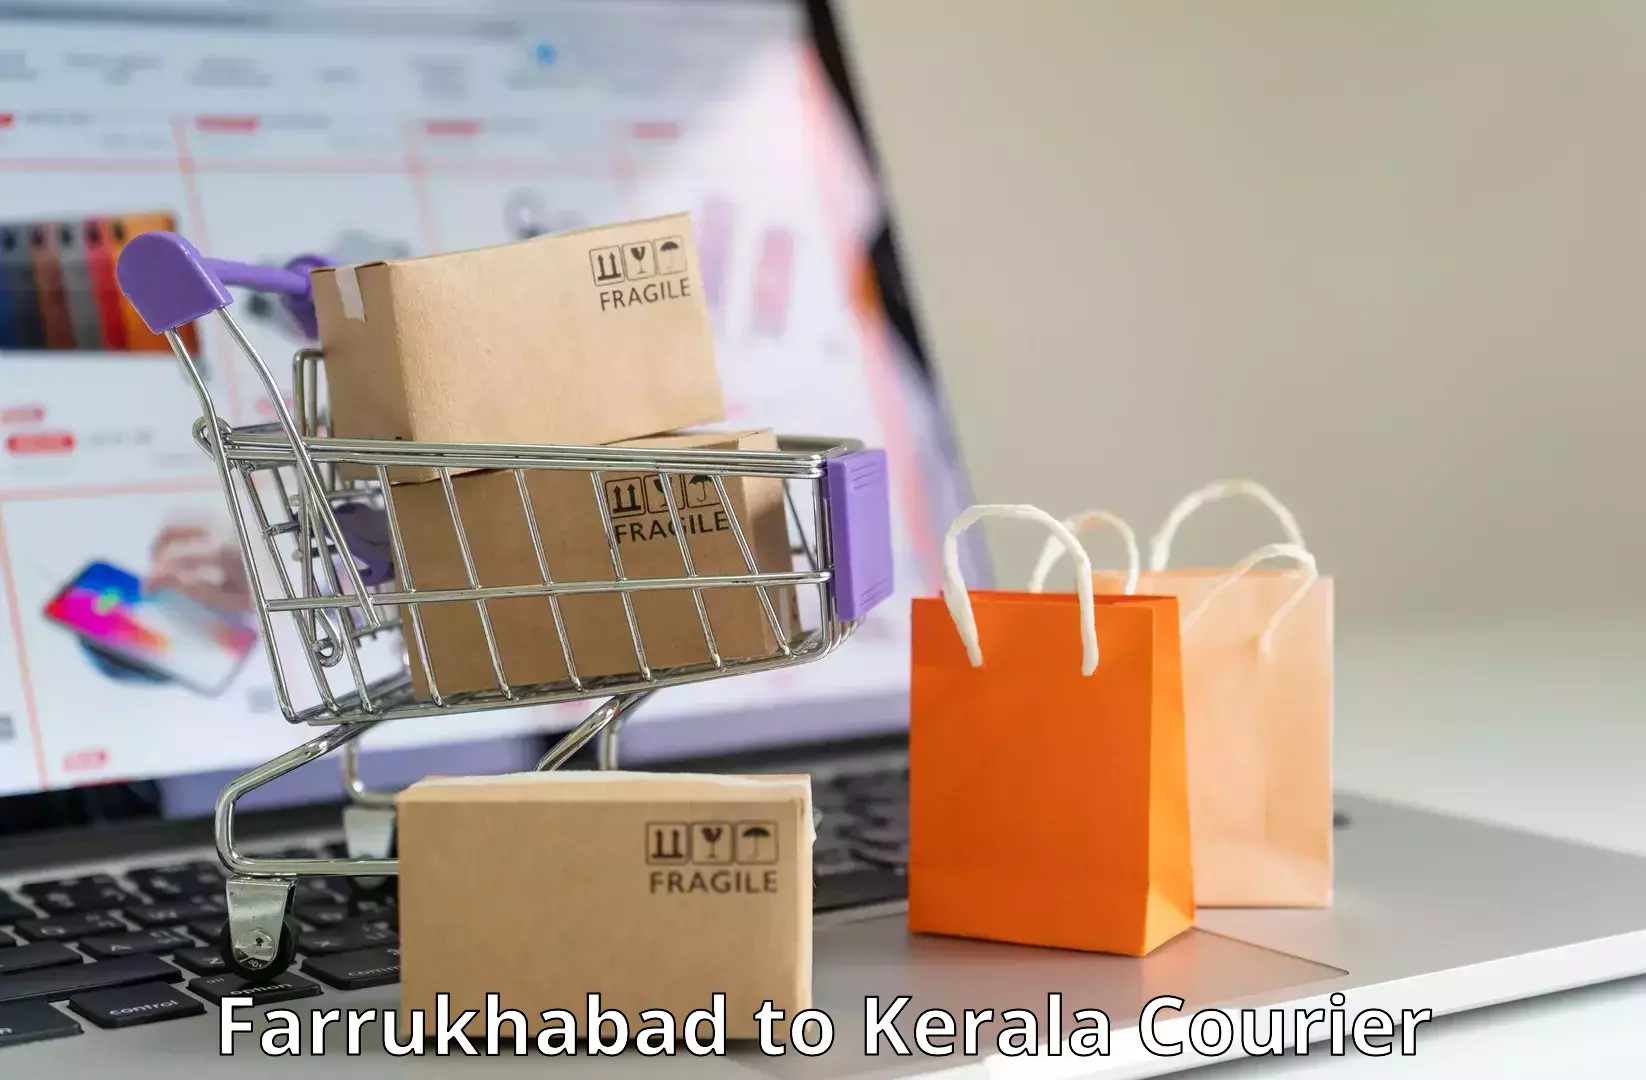 Bulk shipping discounts Farrukhabad to Kuthiathode